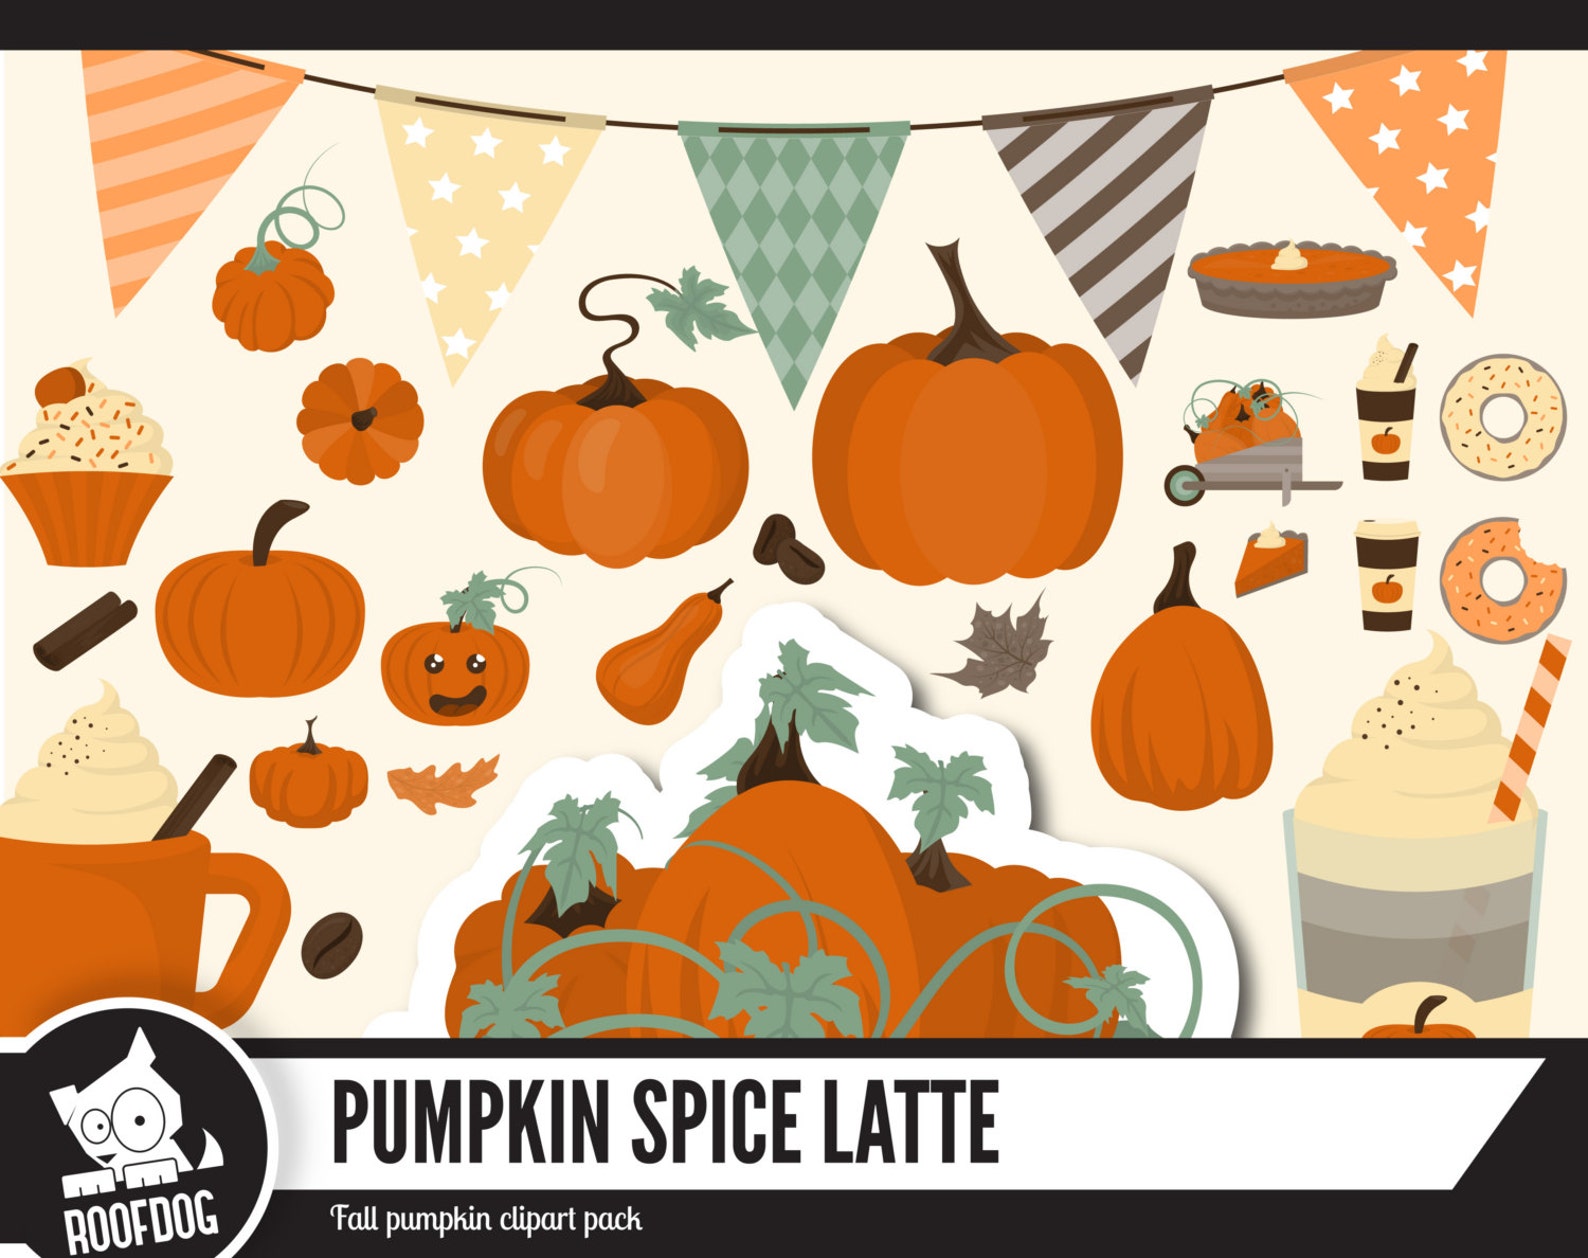 Pumpkin spice latte clipart Fall pumpkin clip art Autumn image 0.